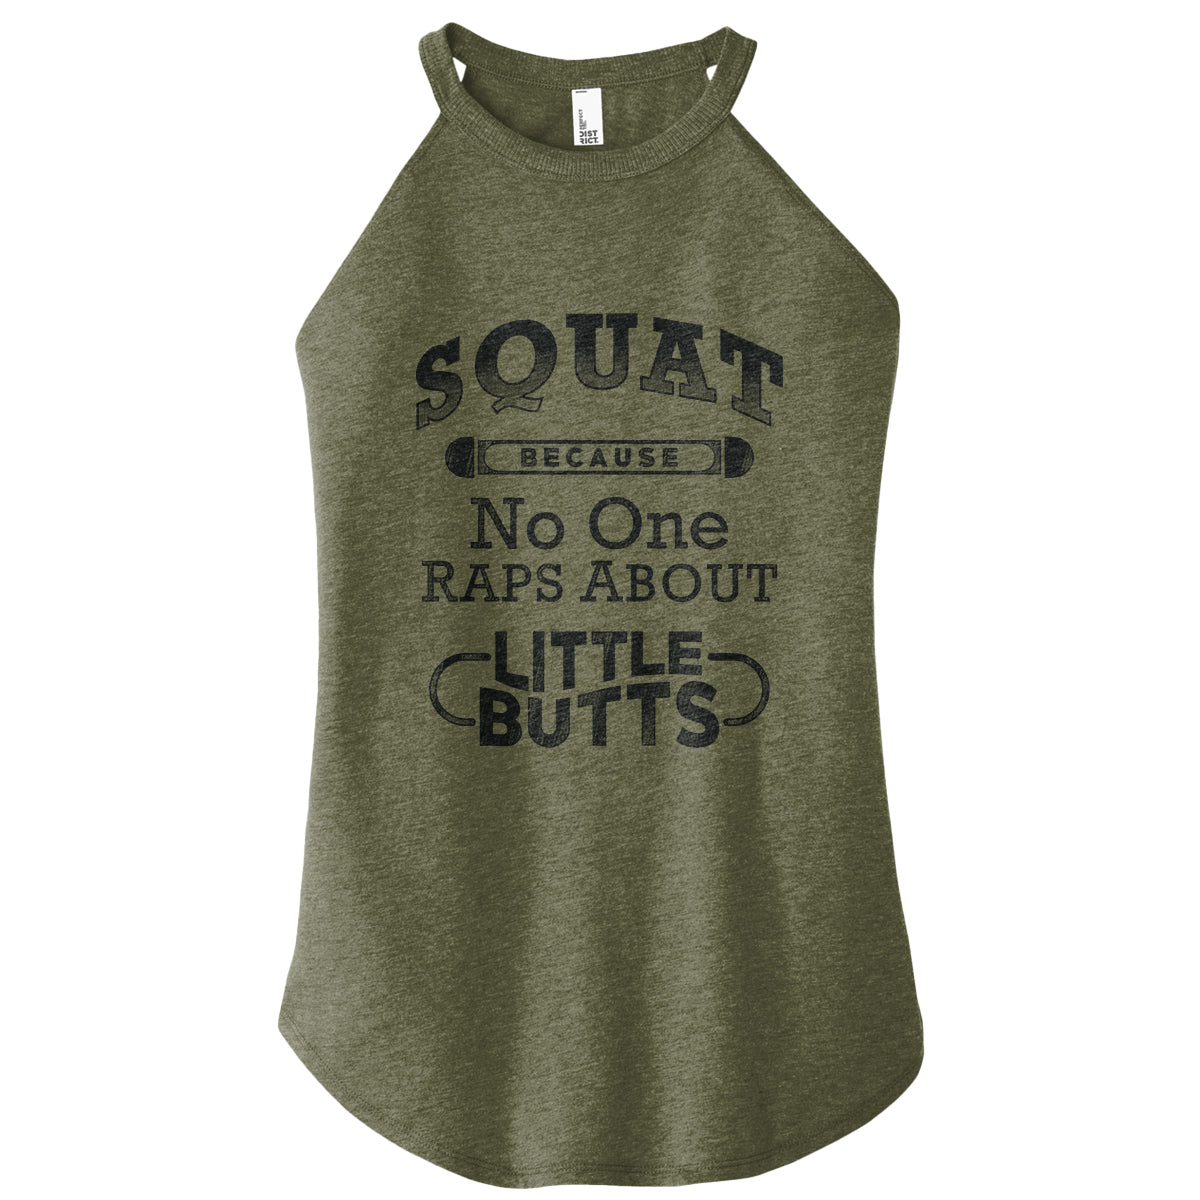 Squat Little Butts Rocker Tank